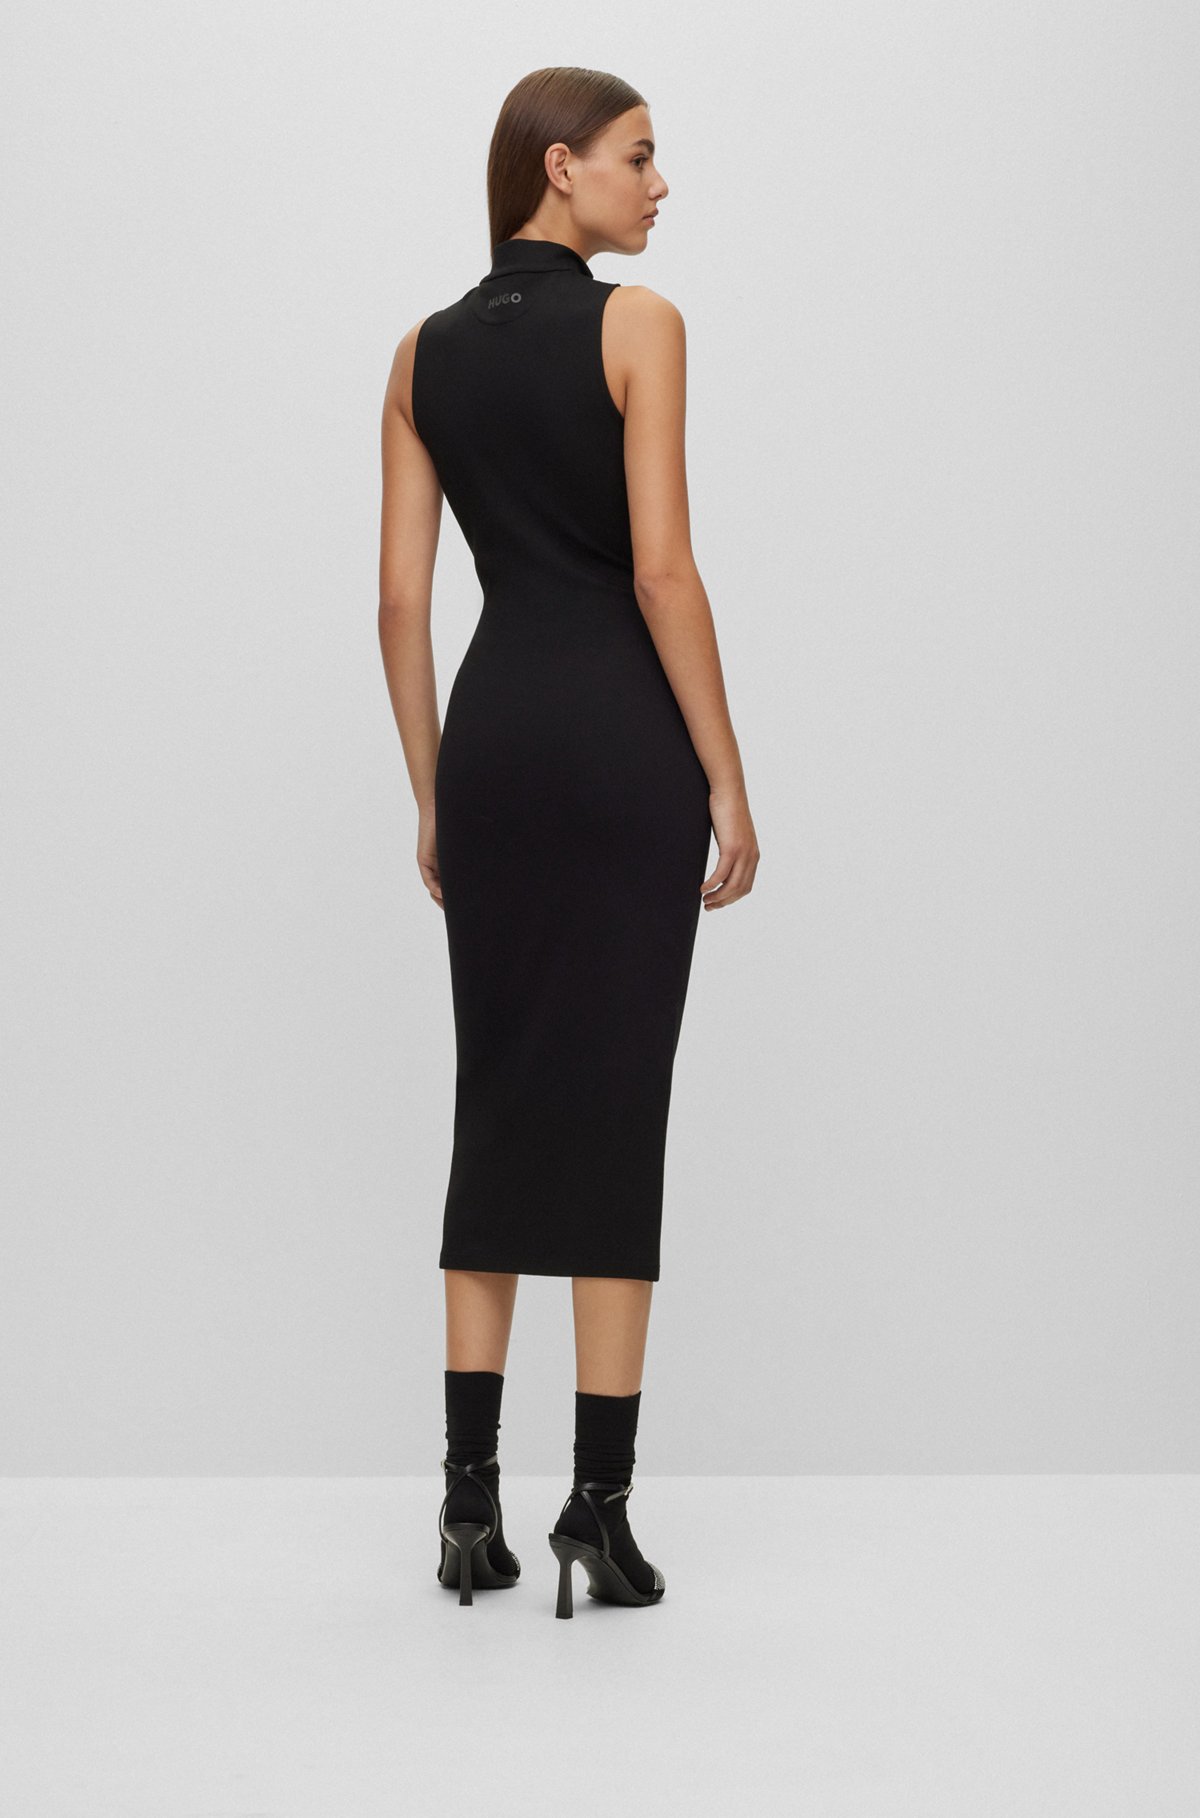 Ärmelloses Slim-Fit Kleid mit Reißverschluss am Ausschnitt, Schwarz